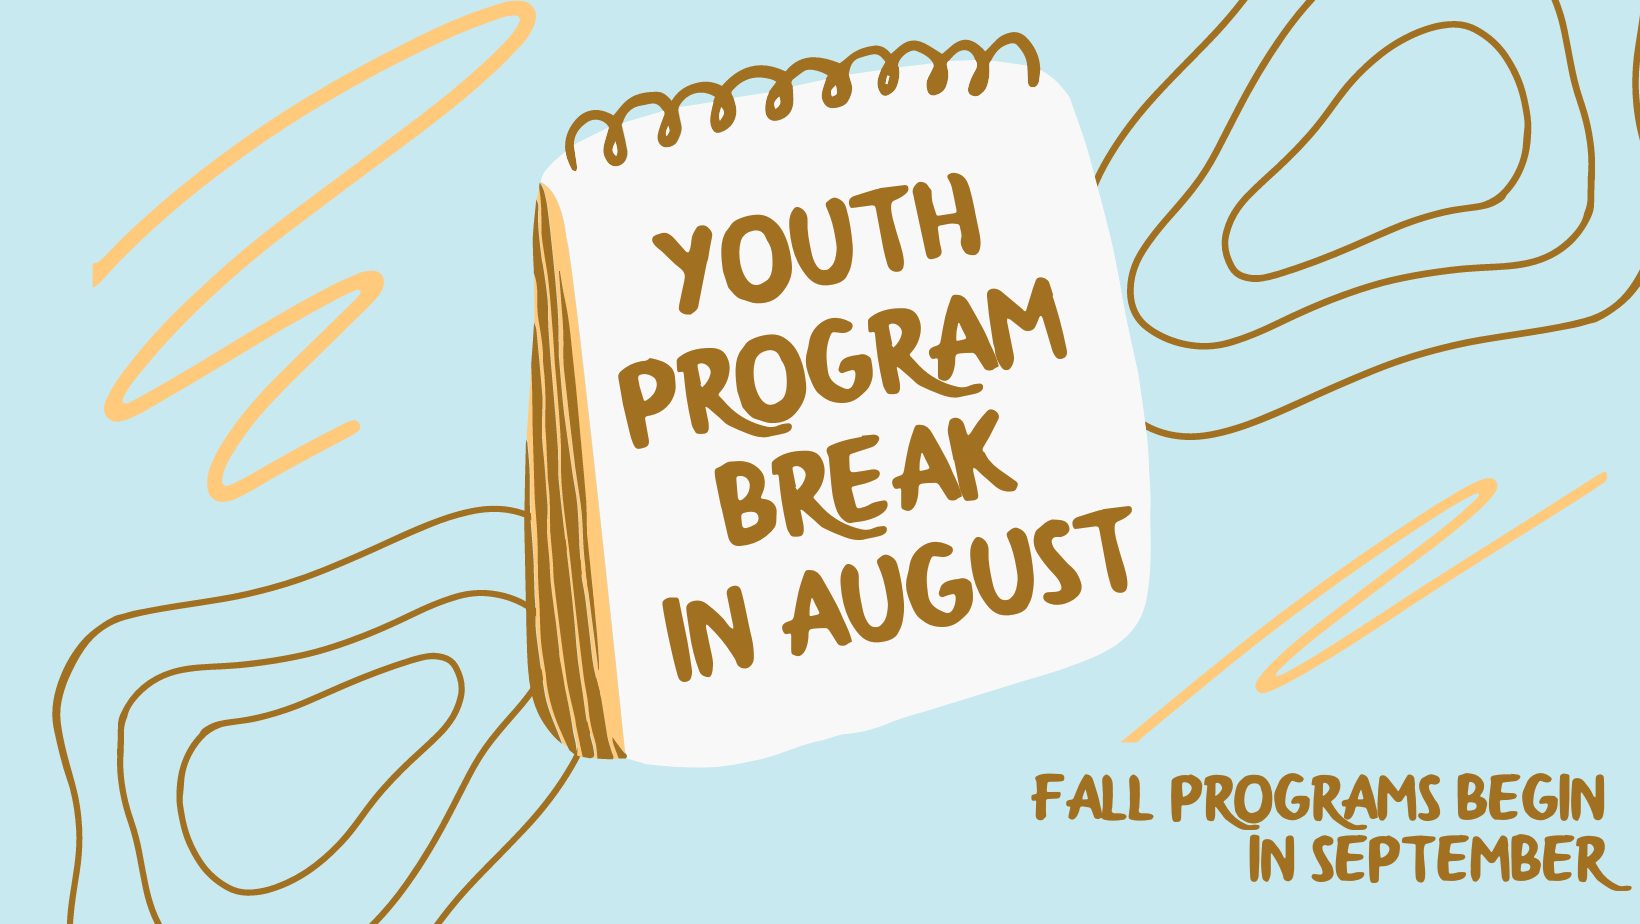 Youth Program break in August